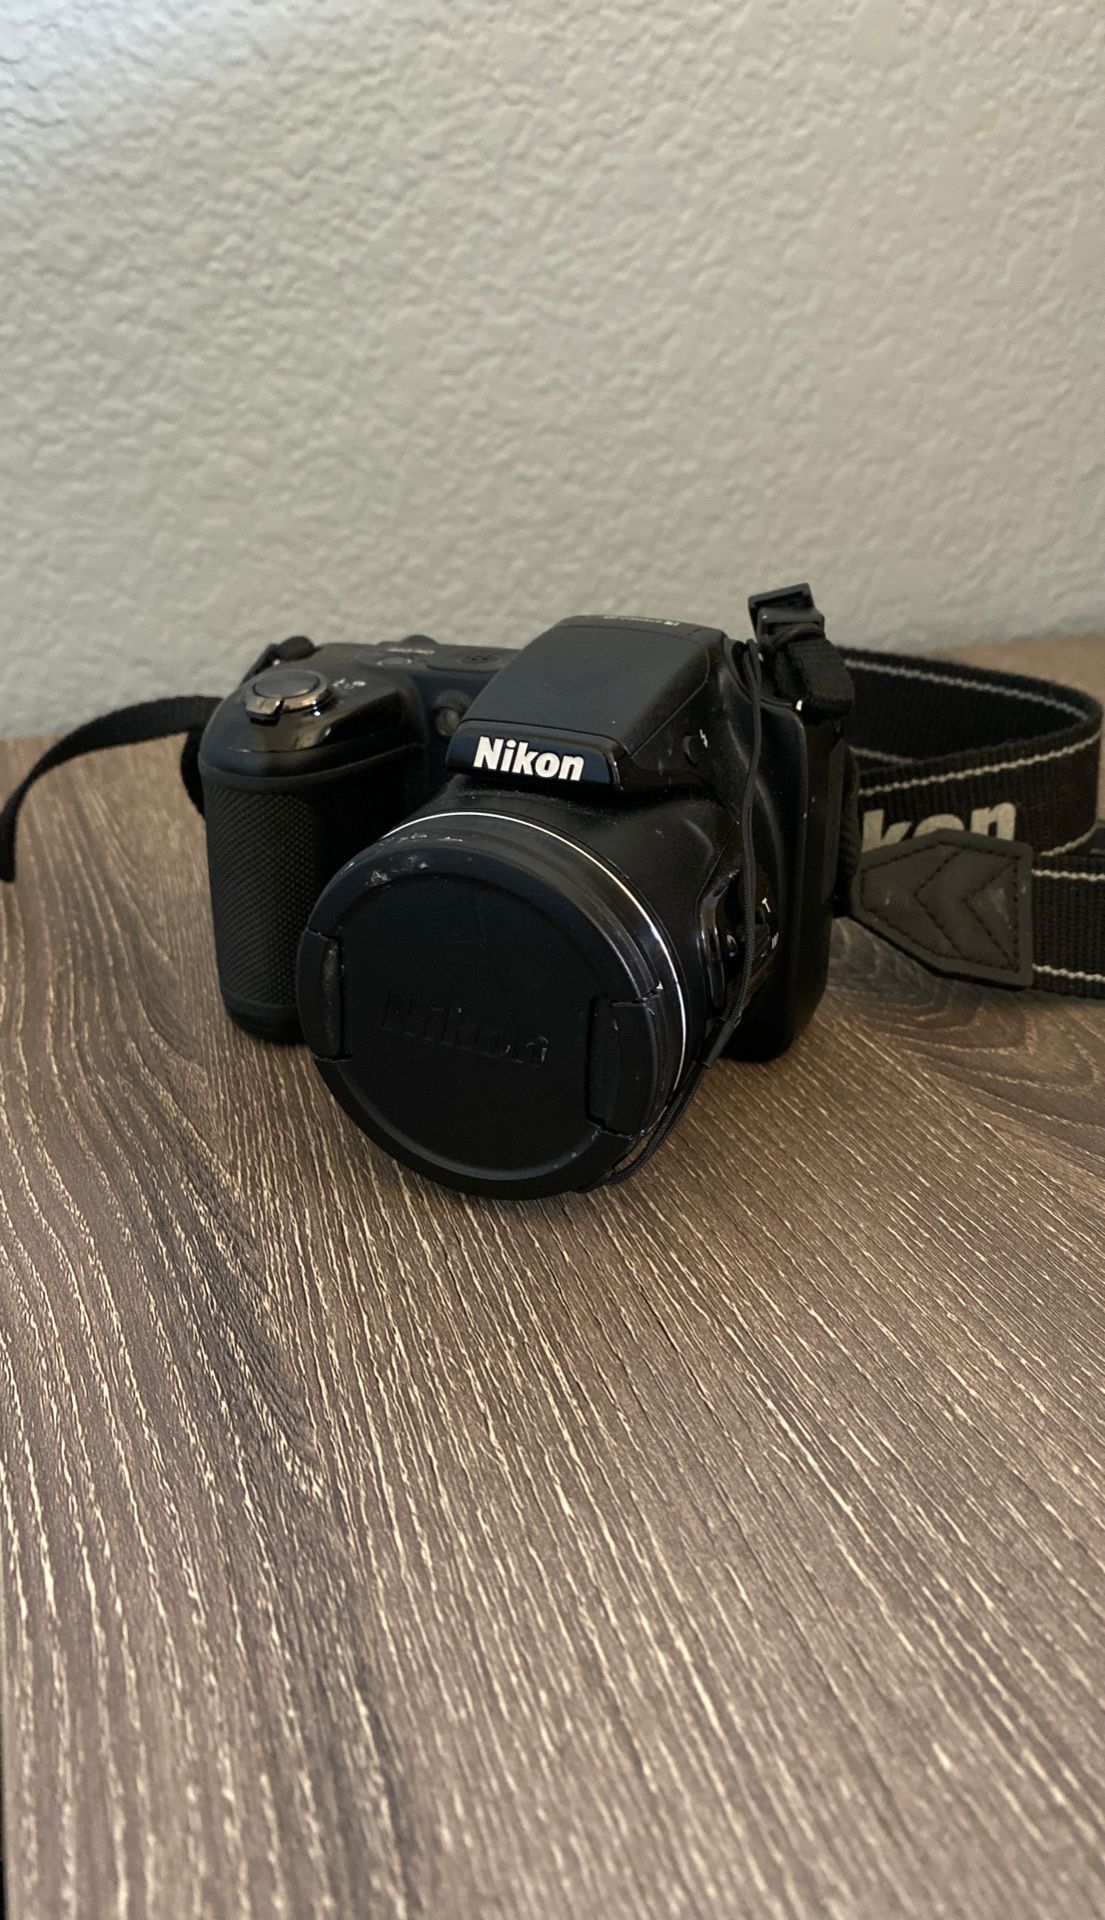 Nikon CoolPix L820 Digital Camera